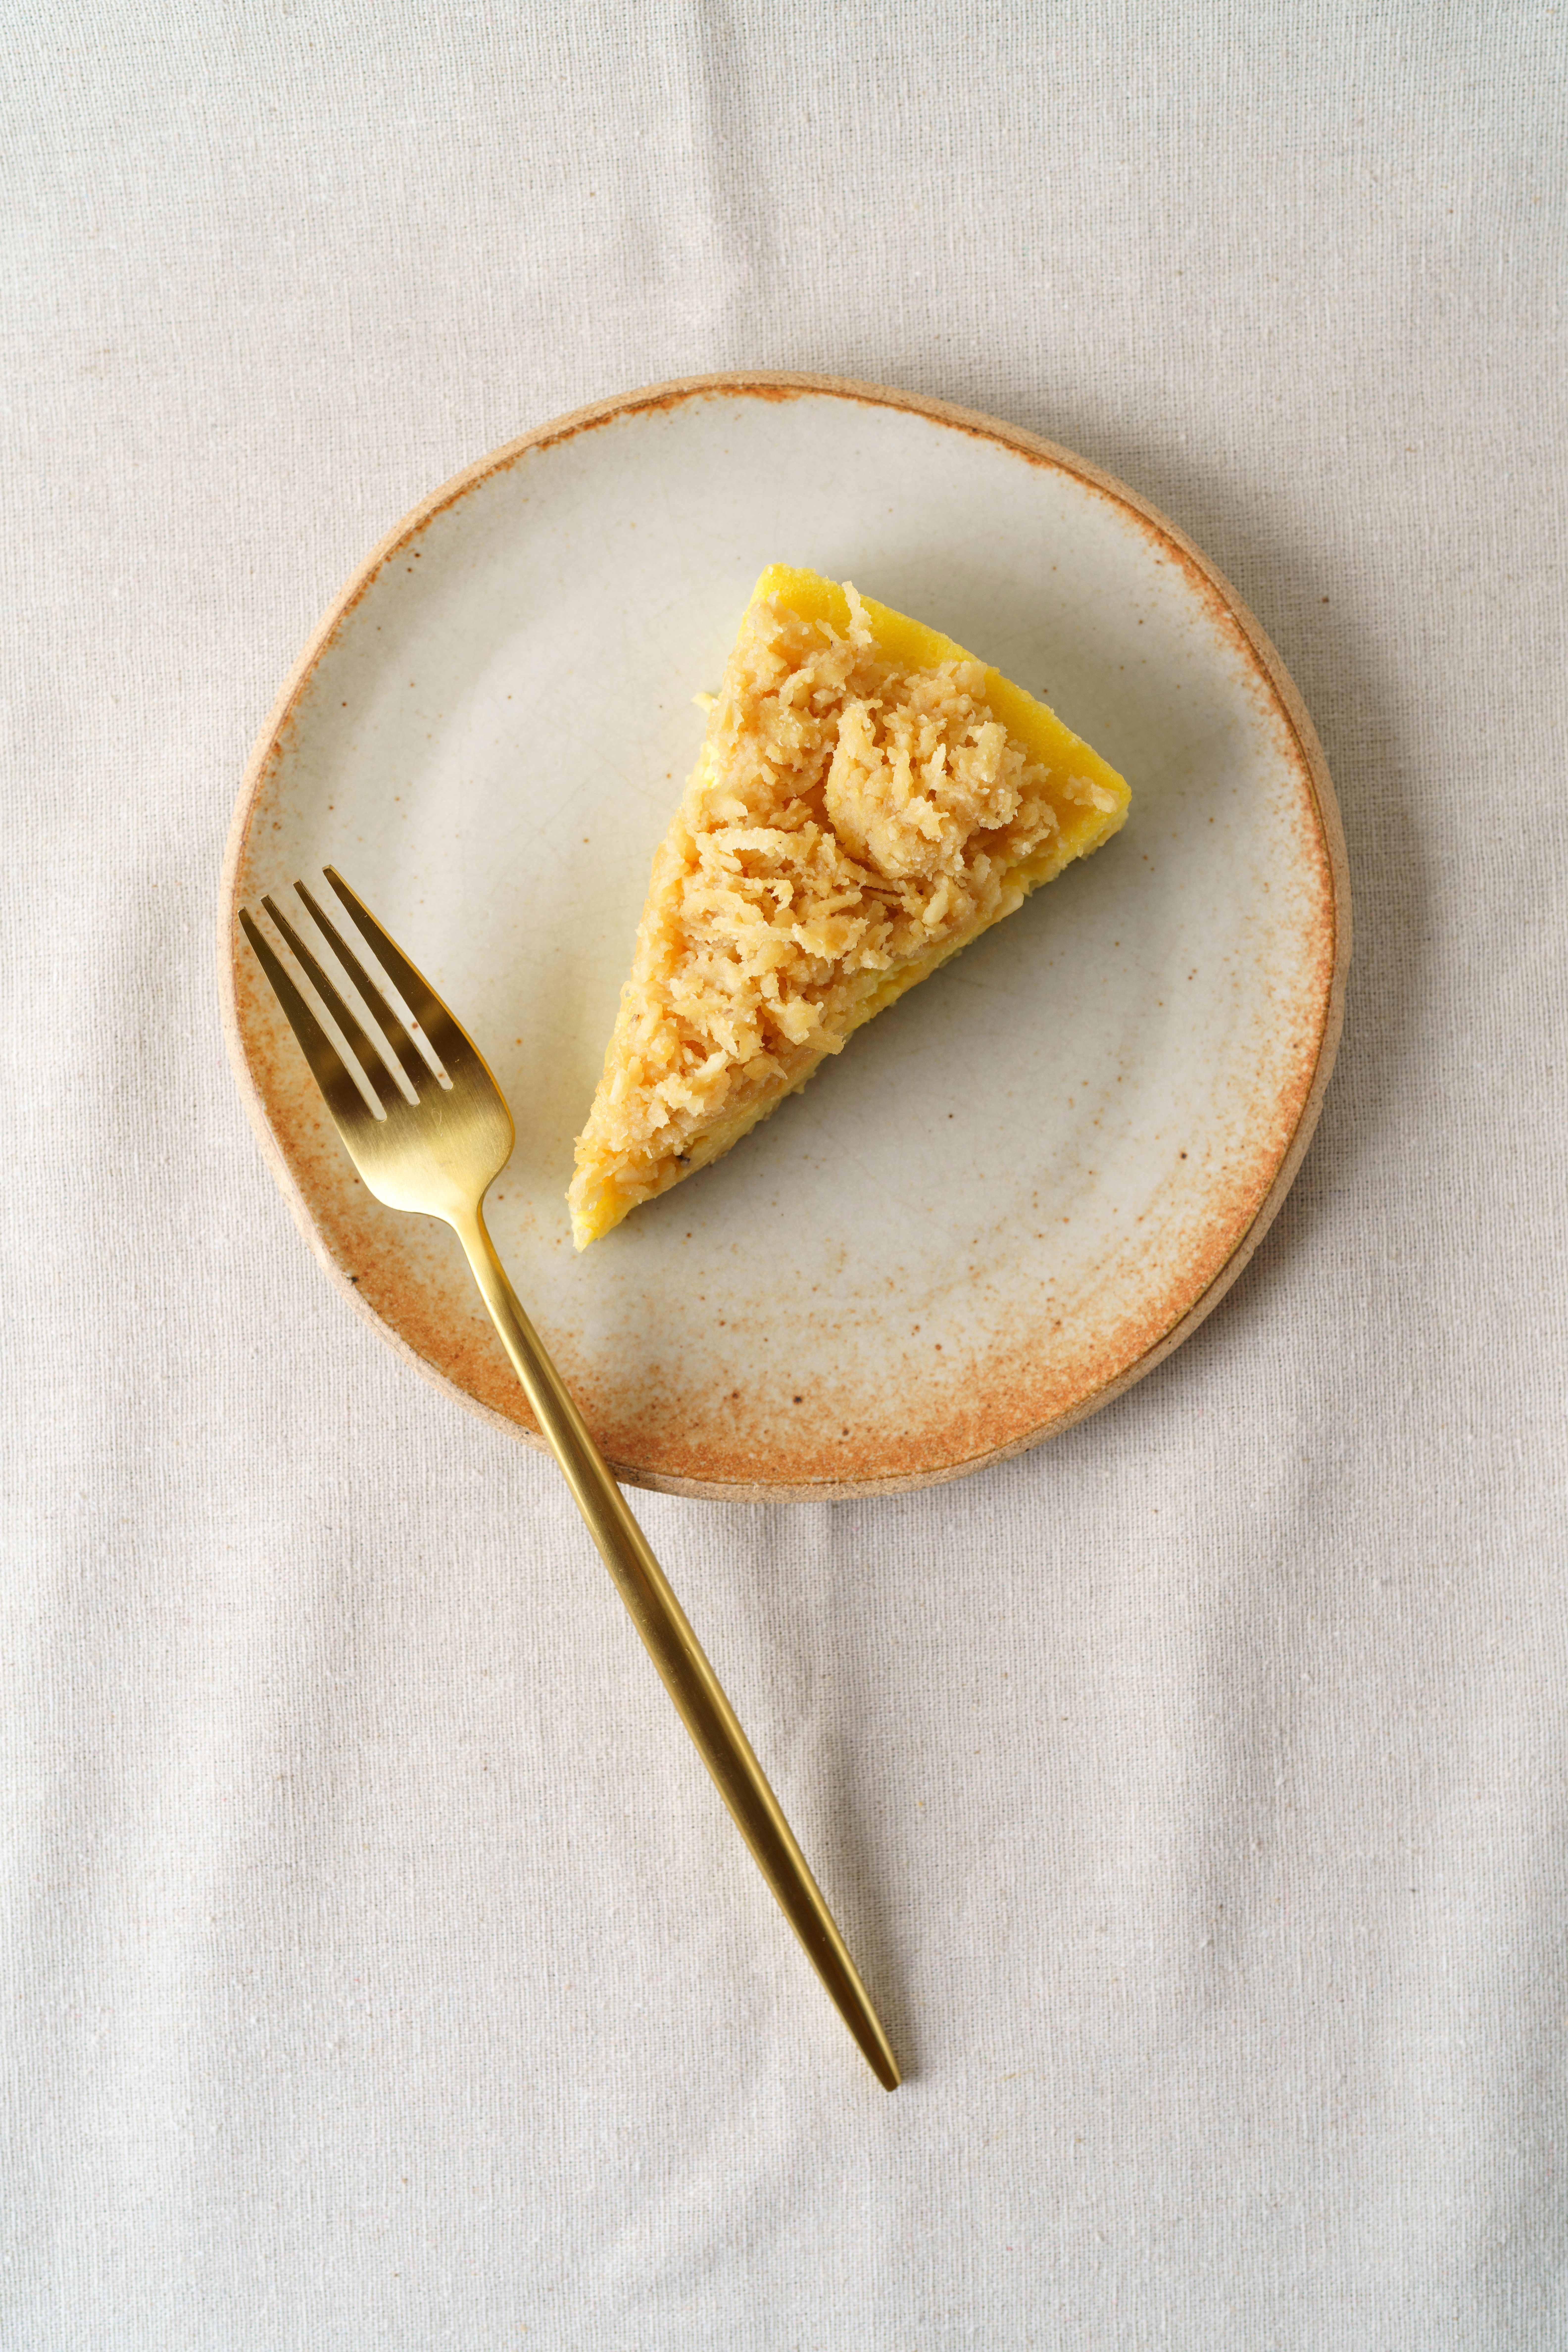 Torta de cor amarelada coberta por pedaços de coco queimado servida em prato de cerâmica junto de um longo garfo